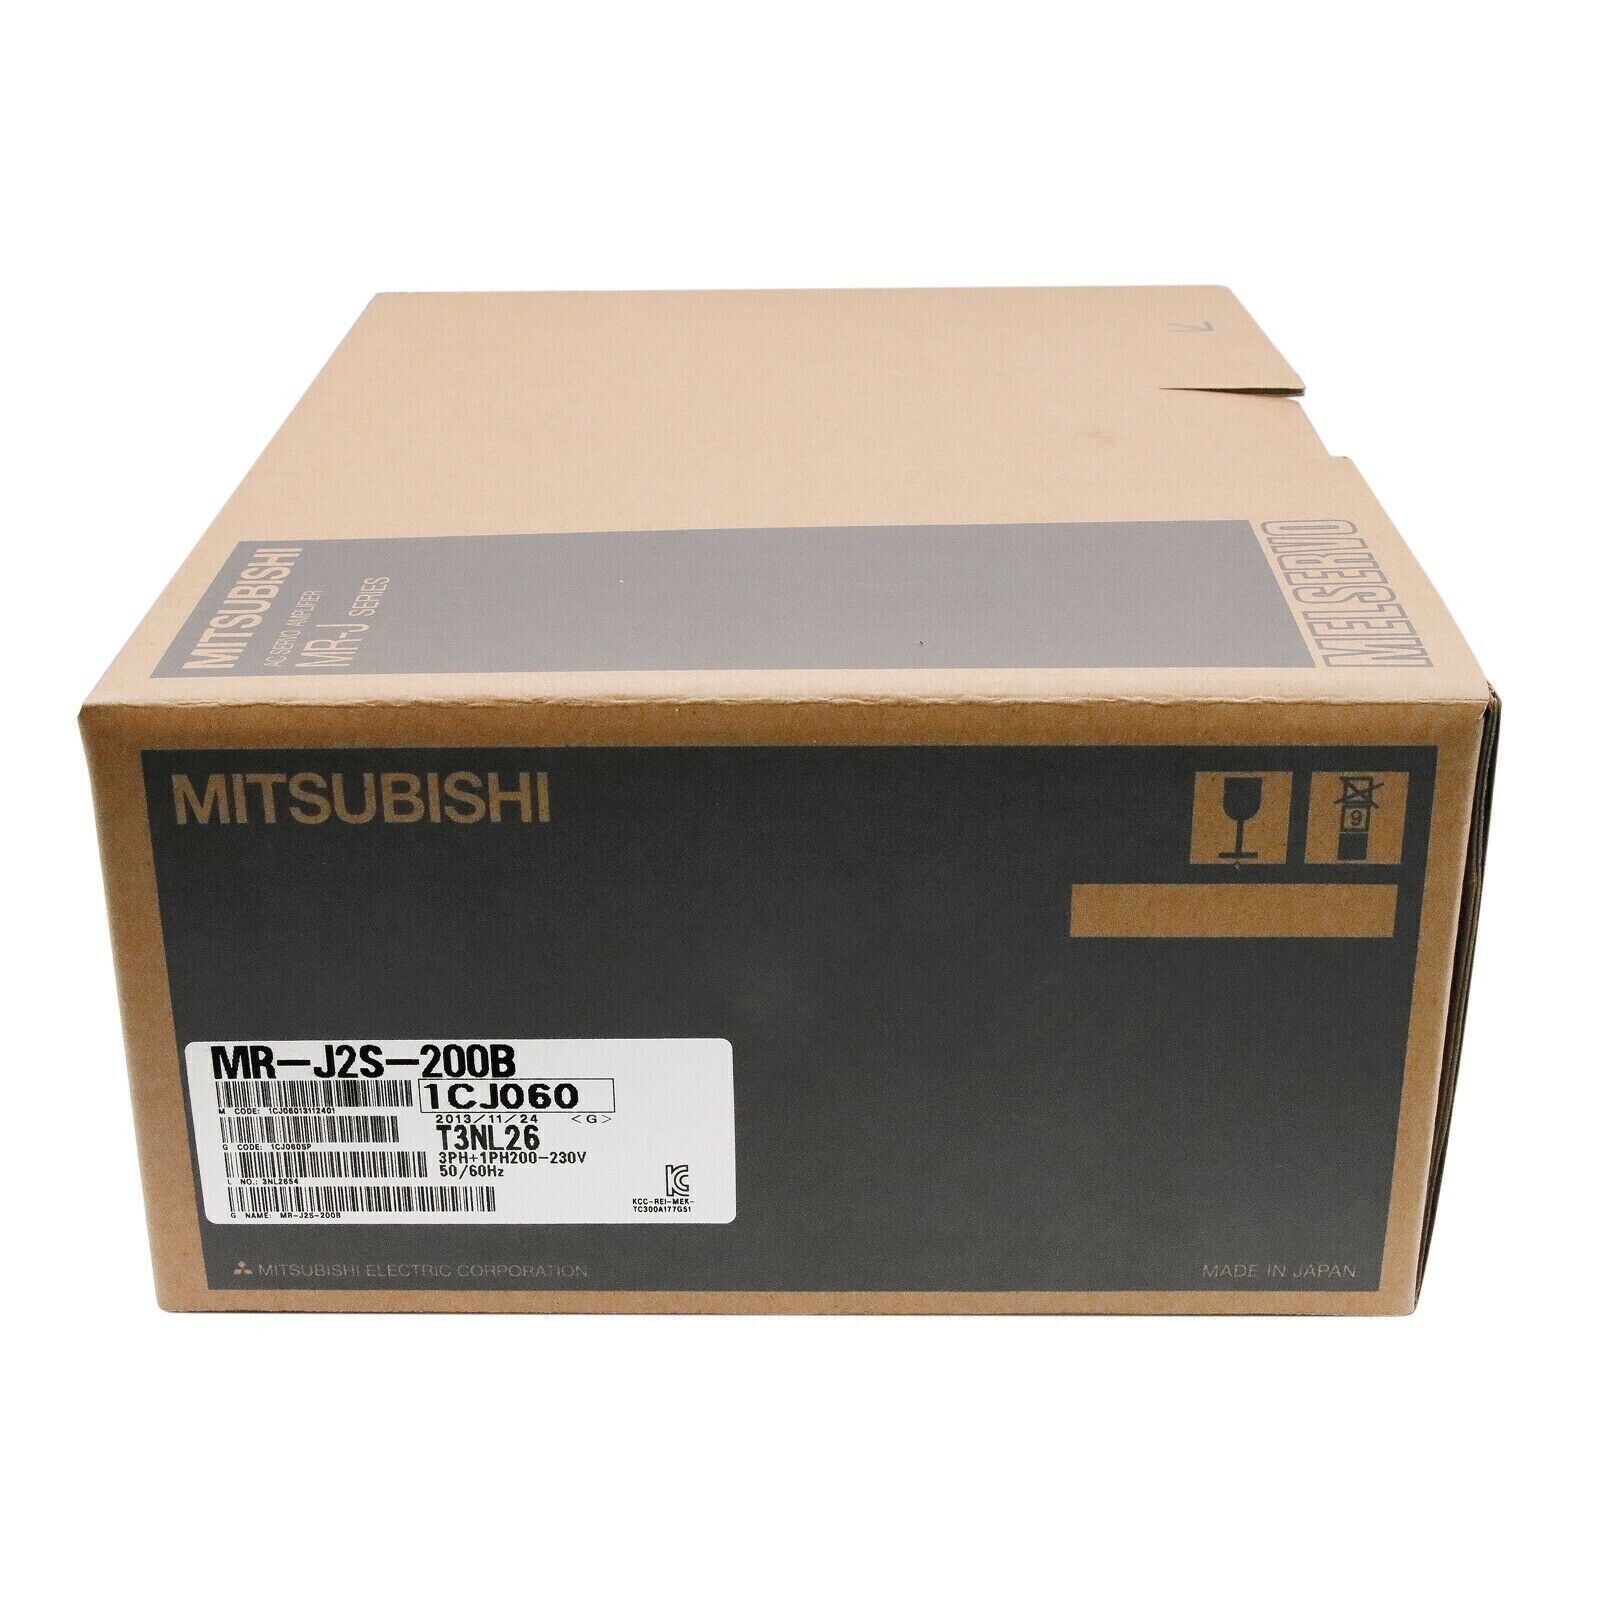 New in box MITSUBISHI MR-J2S-200B Amplifier MRJ2S200B AC Servo Drive